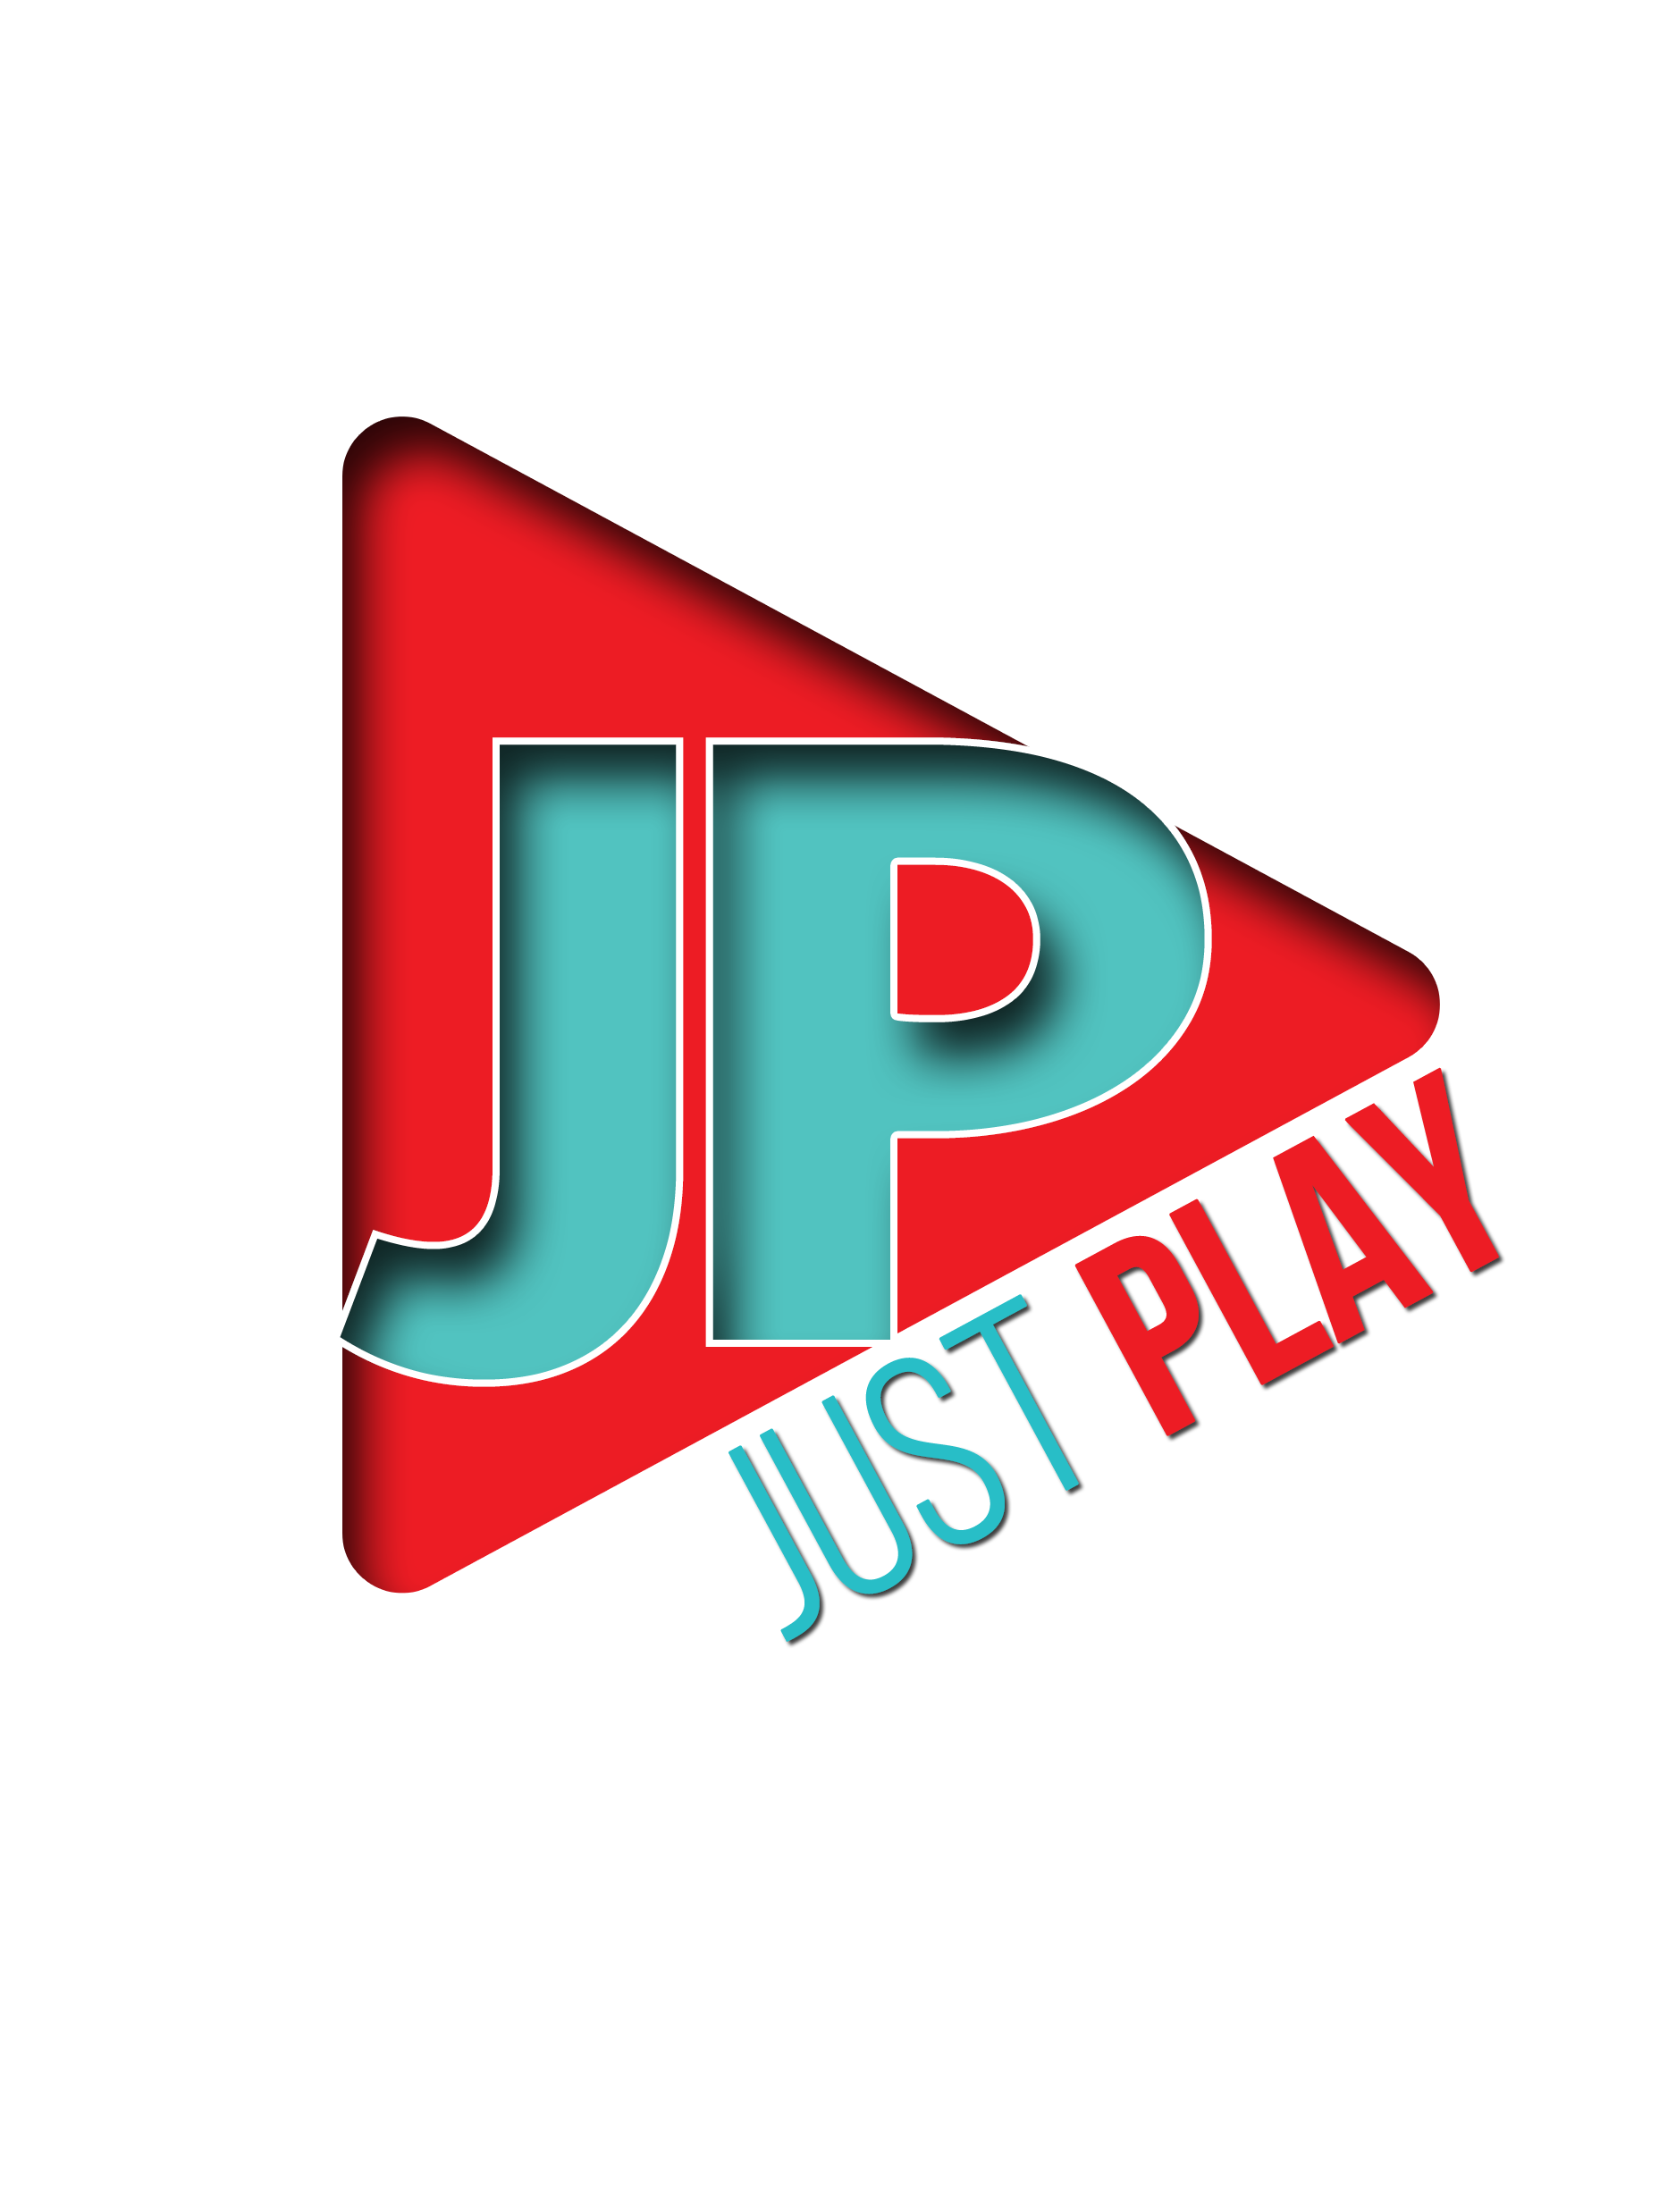 logo - justplay.png